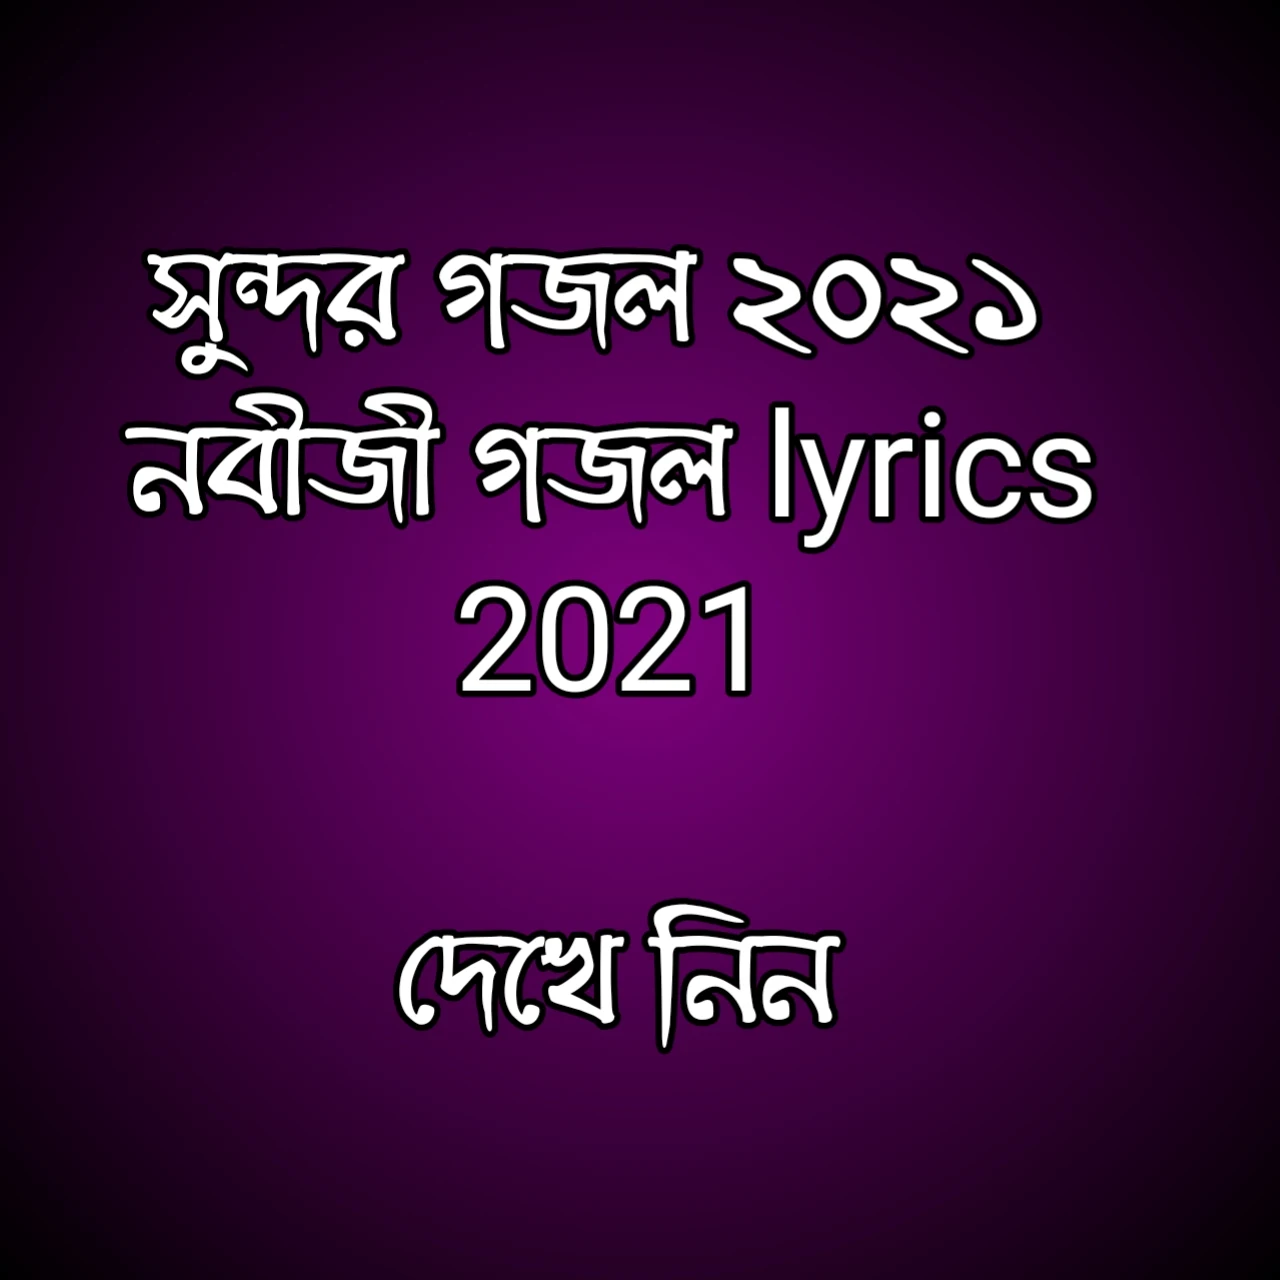 সুন্দর গজল ২০২১ | গজল mp3 2021 | নবীজী গজল lyrics 2021